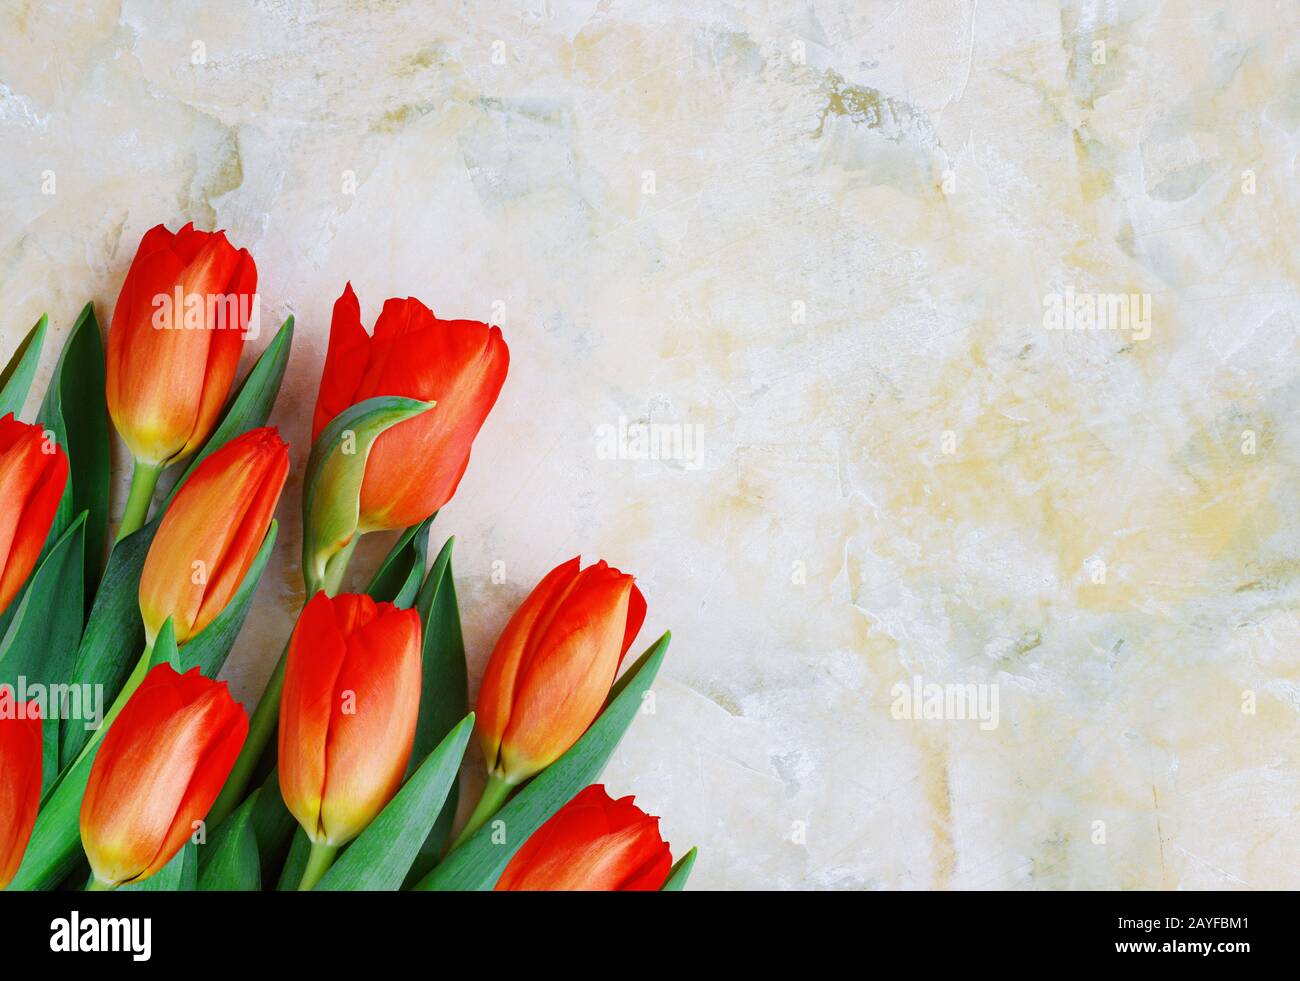 Tulipes rouge-jaune sur fond clair. Printemps - affiche avec espace texte libre, carte avec fleurs de printemps Banque D'Images